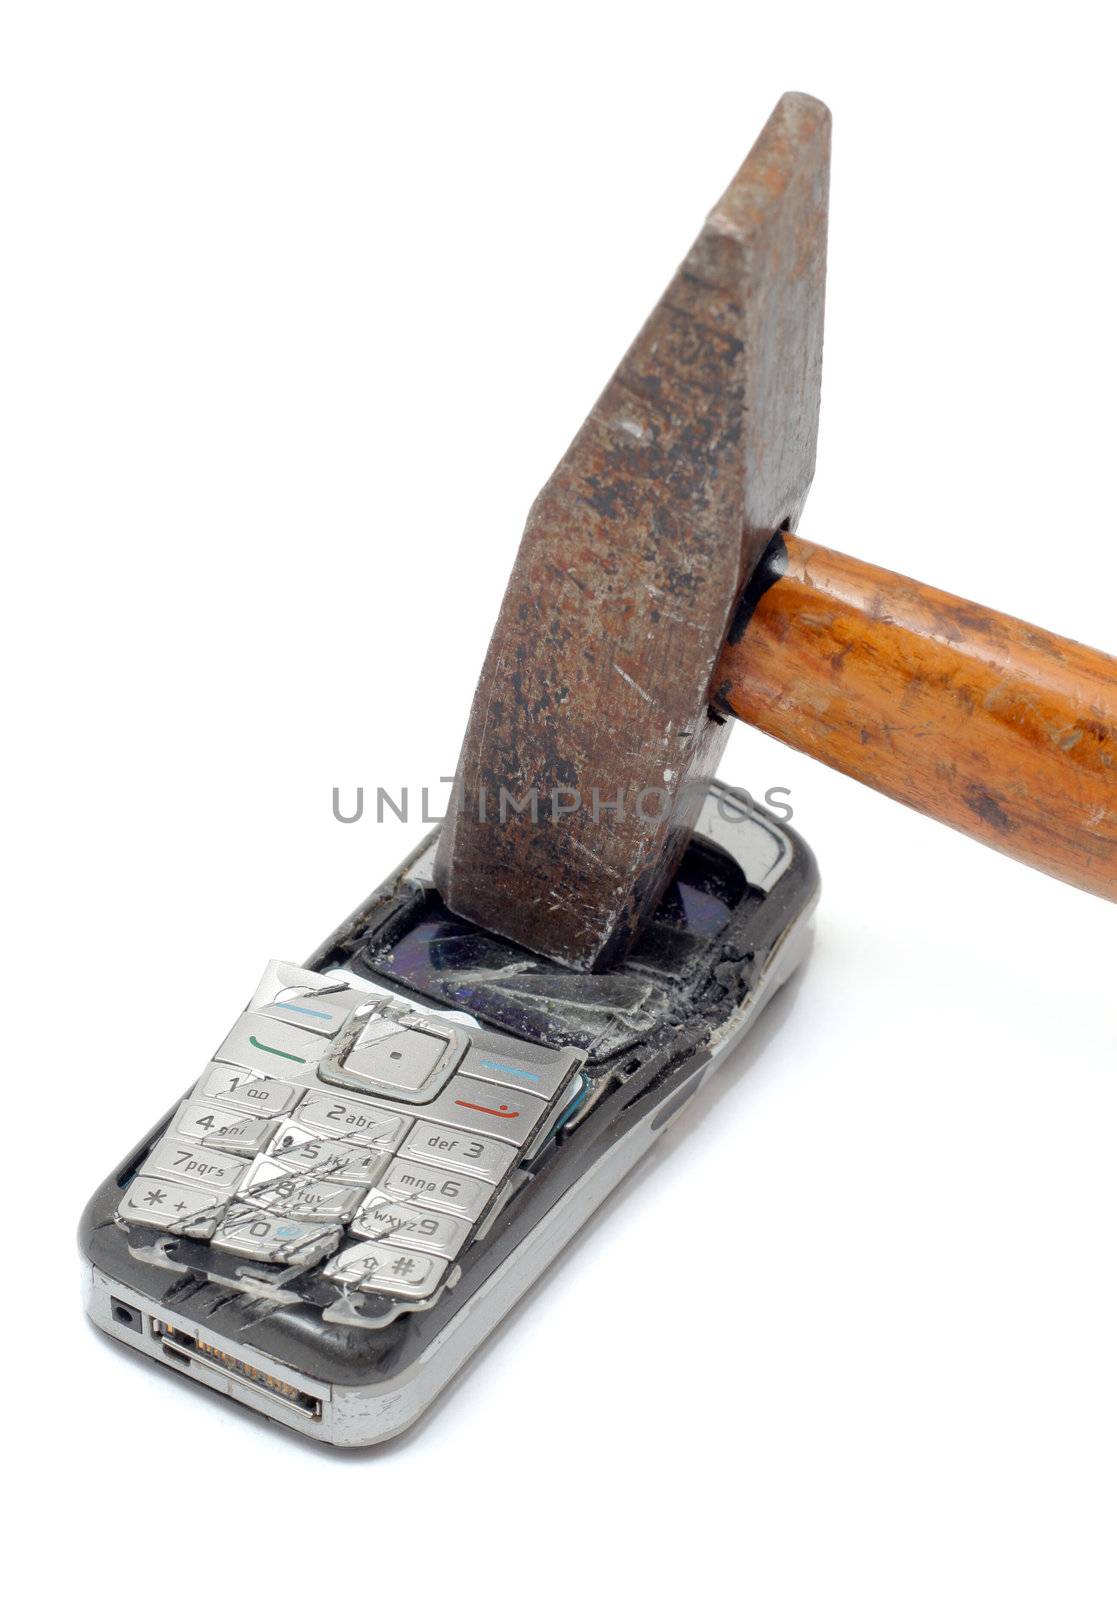 Hammer smashing cellular phone isolated on the white background